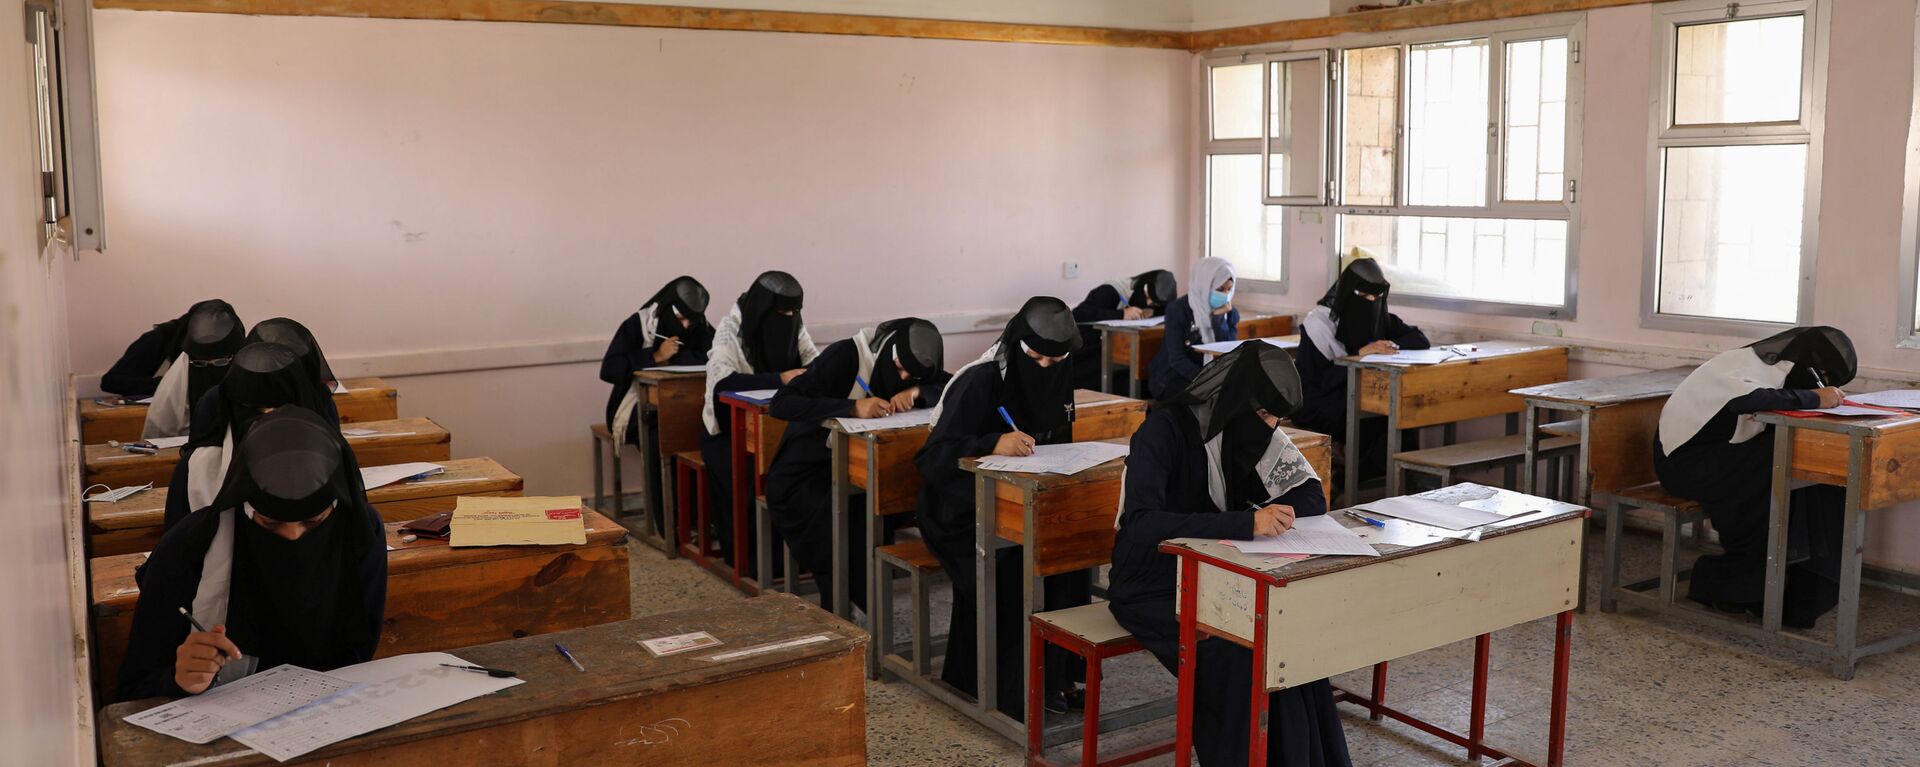 طالبات خلال تقديم اختبارات نهائية تم تأجيلها سابقا بسبب كورونا بمدرسة في صنعاء، اليمن 15 أغسطس 2020 - سبوتنيك عربي, 1920, 28.11.2020